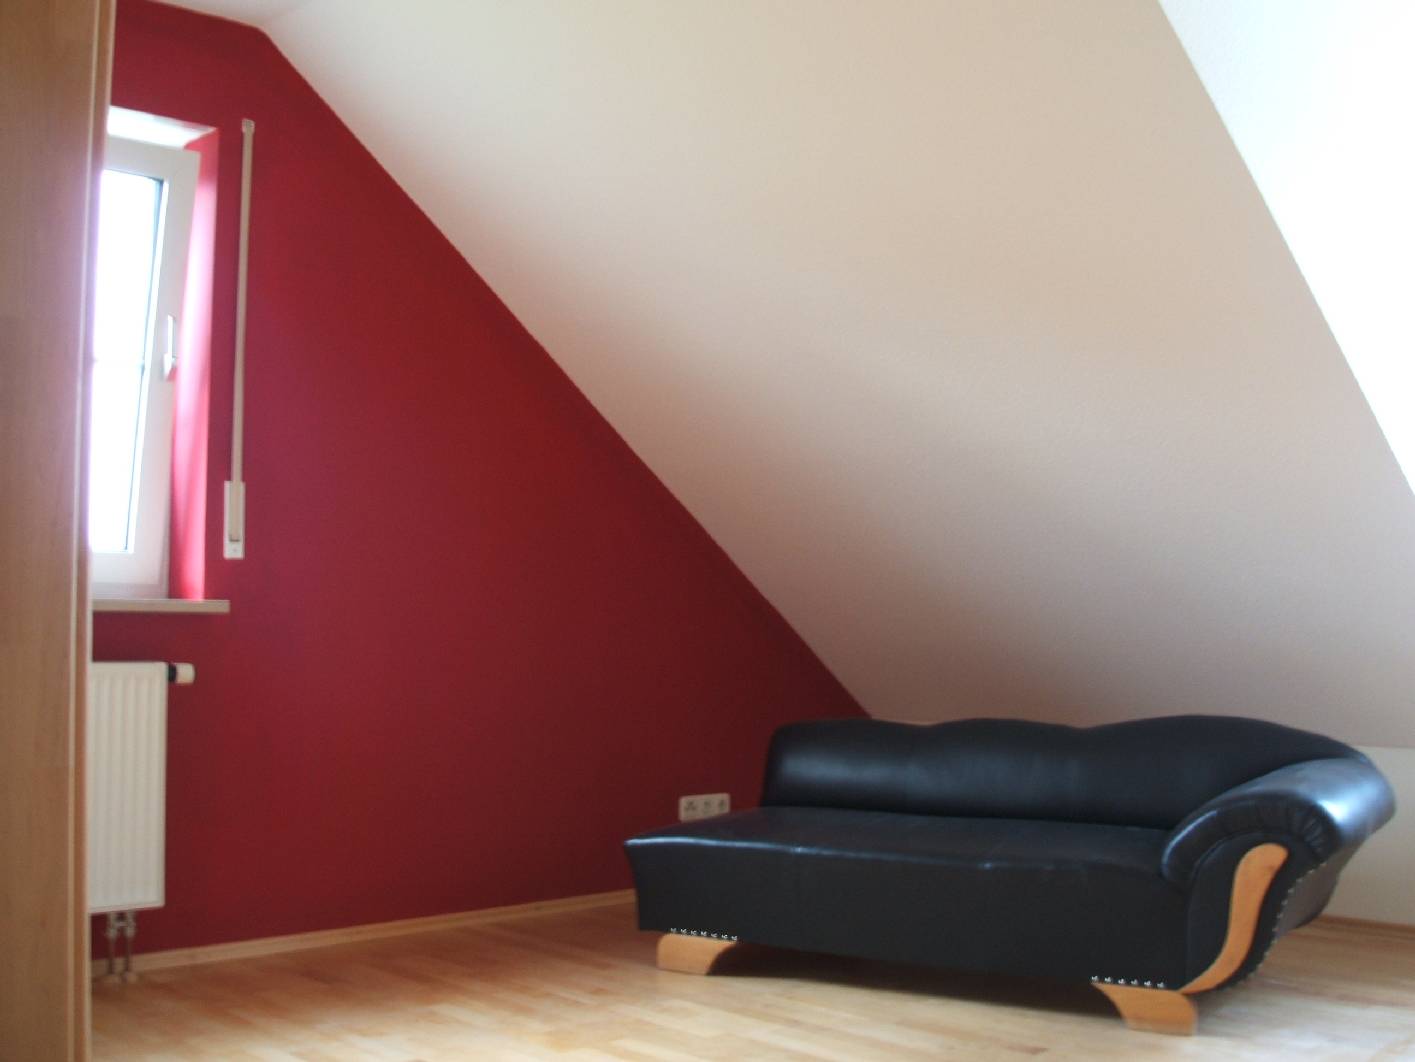 Sie möchten Ihrem Haus oder Ihrer Wohnung in Hallerndorf einen umfassenden Neuanstrich verpassen? Dann beraten wir Sie gern zu unseren Malerarbeiten und Wandtechniken